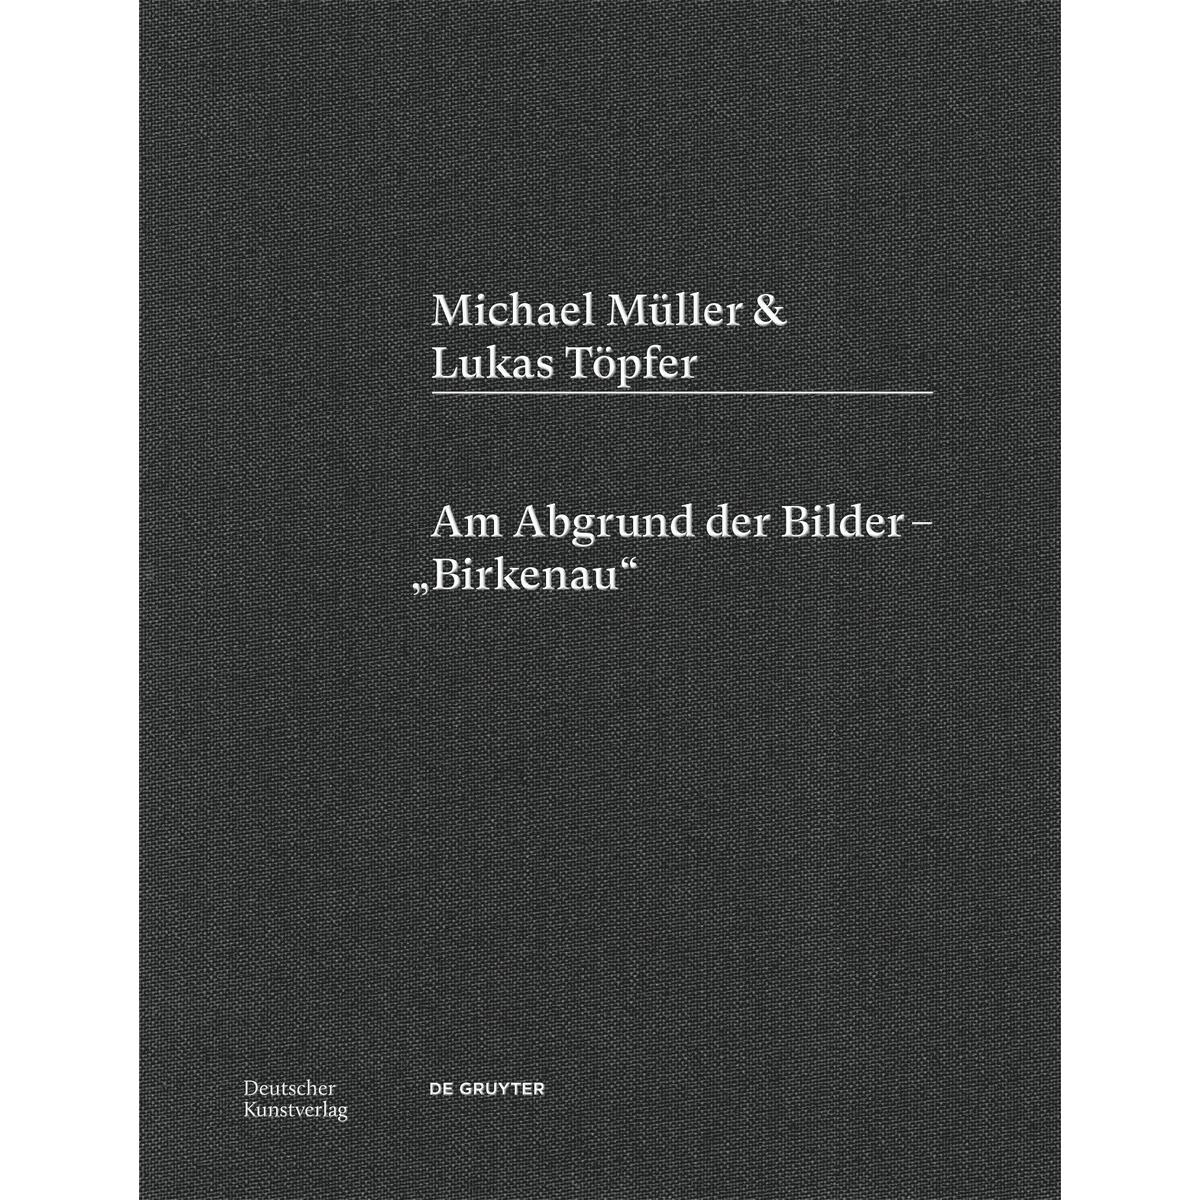 Michael Müller & Lukas Töpfer von Deutscher Kunstverlag